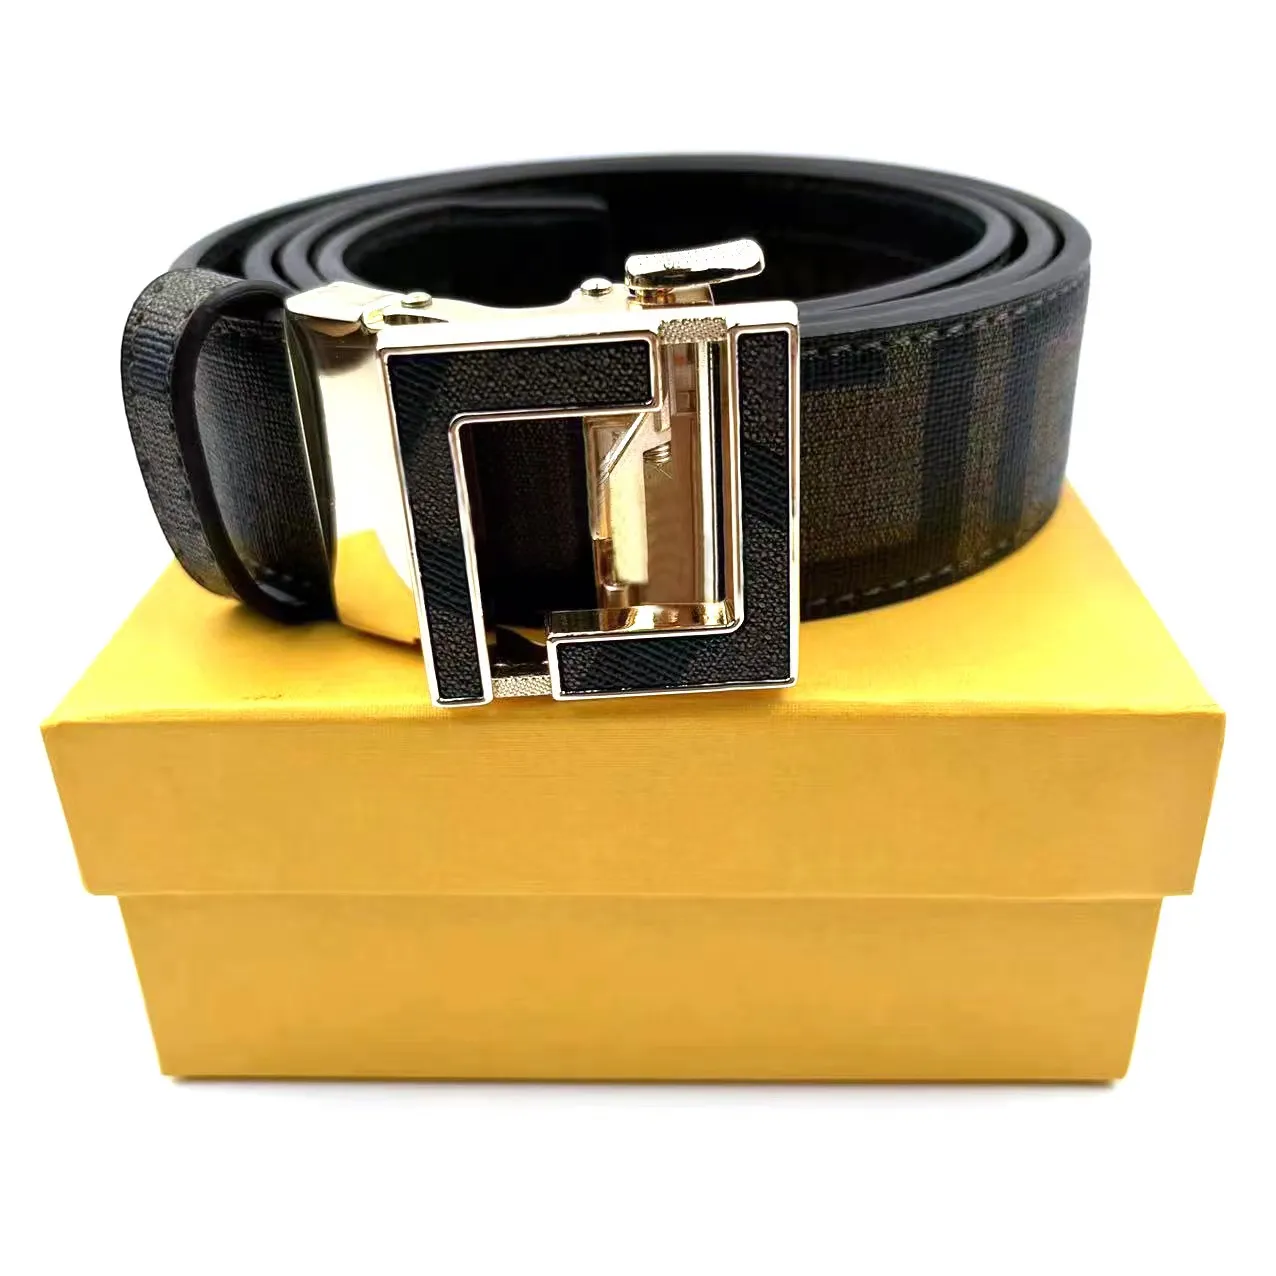 Homens designers cintos carta fivela automática mulheres moda cinto de alta qualidade couro genuíno cintura ceinture lue largura 3.5cm com